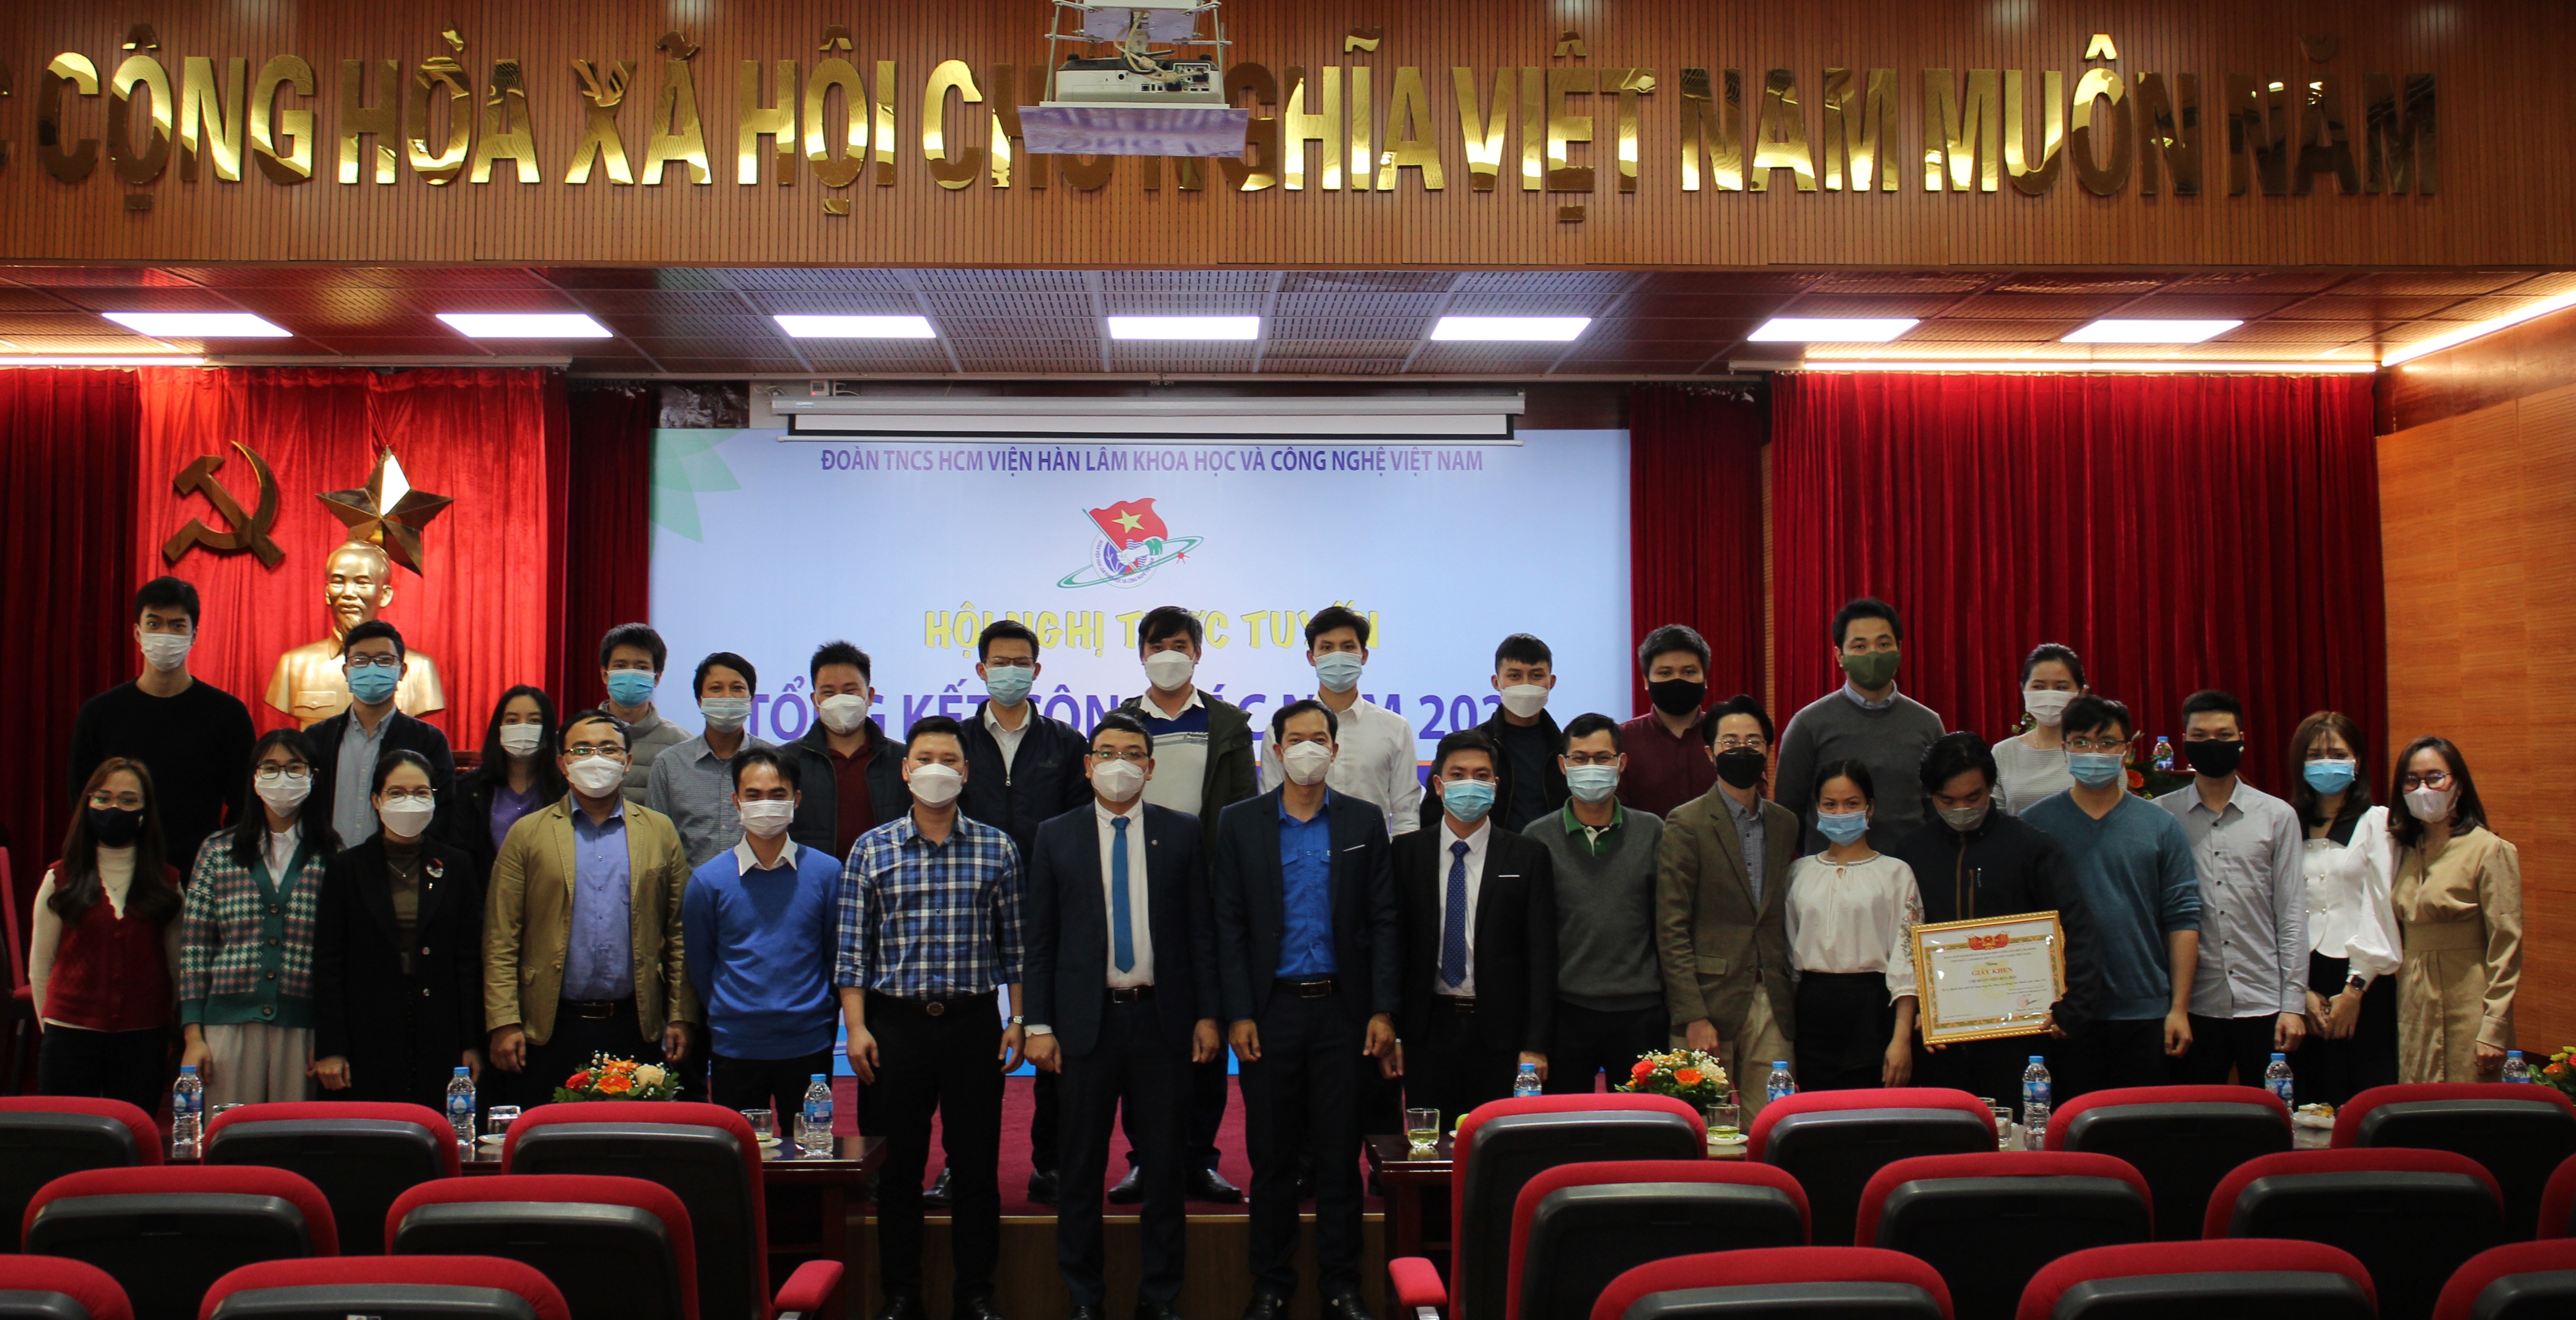 Đoàn Thanh niên Viện Hàn lâm Khoa học và Công nghệ Việt Nam tổng kết công tác năm 2021, kế hoạch năm 2022